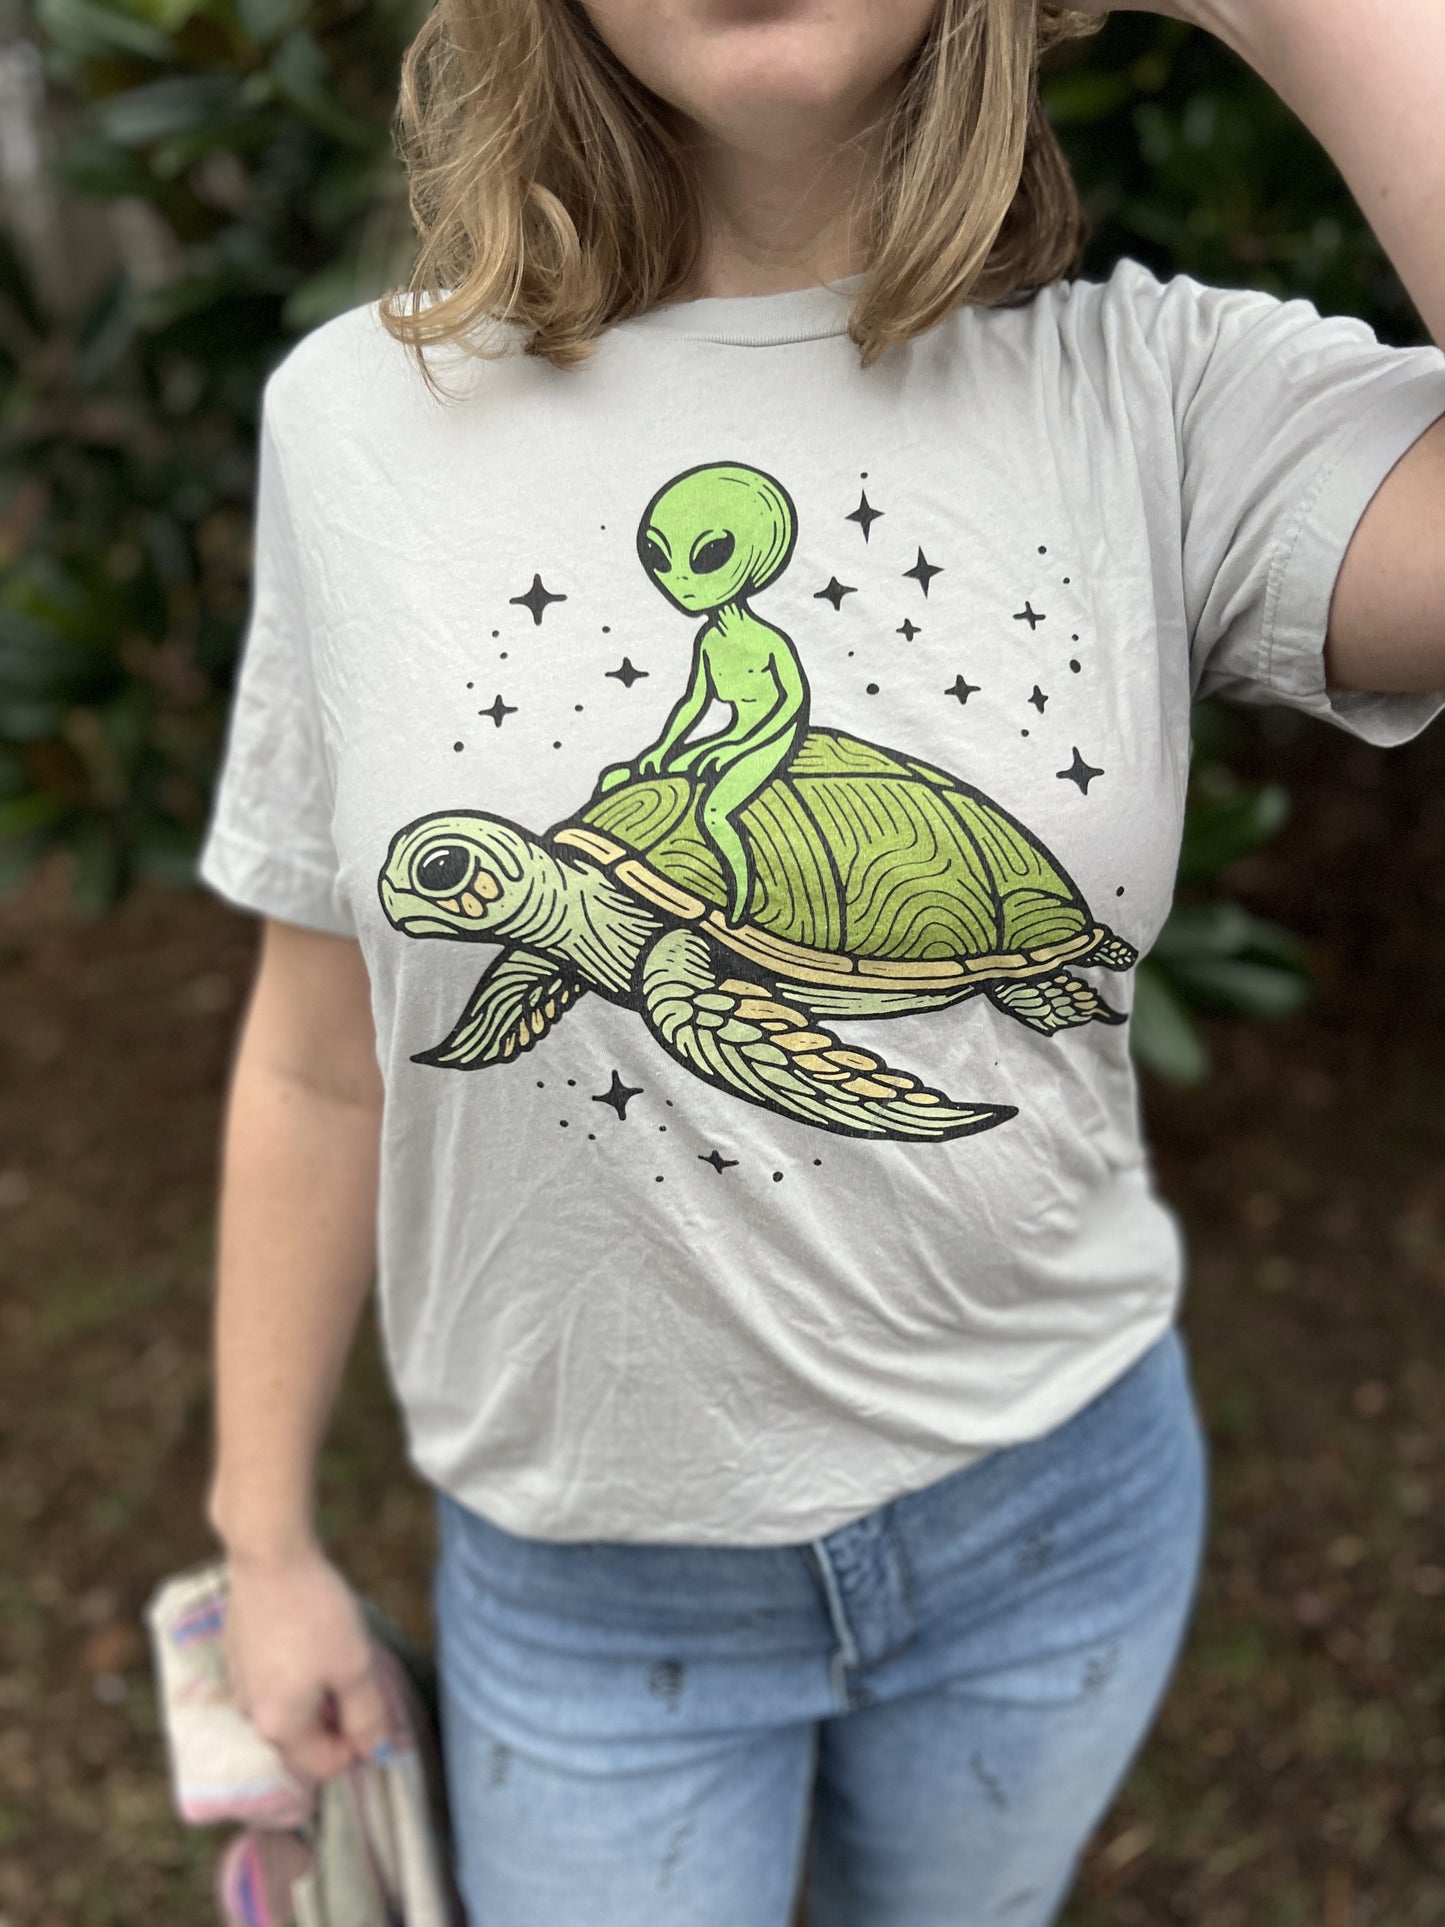 Alien Turtle Tee Shirt, Unisex Jersey Tee